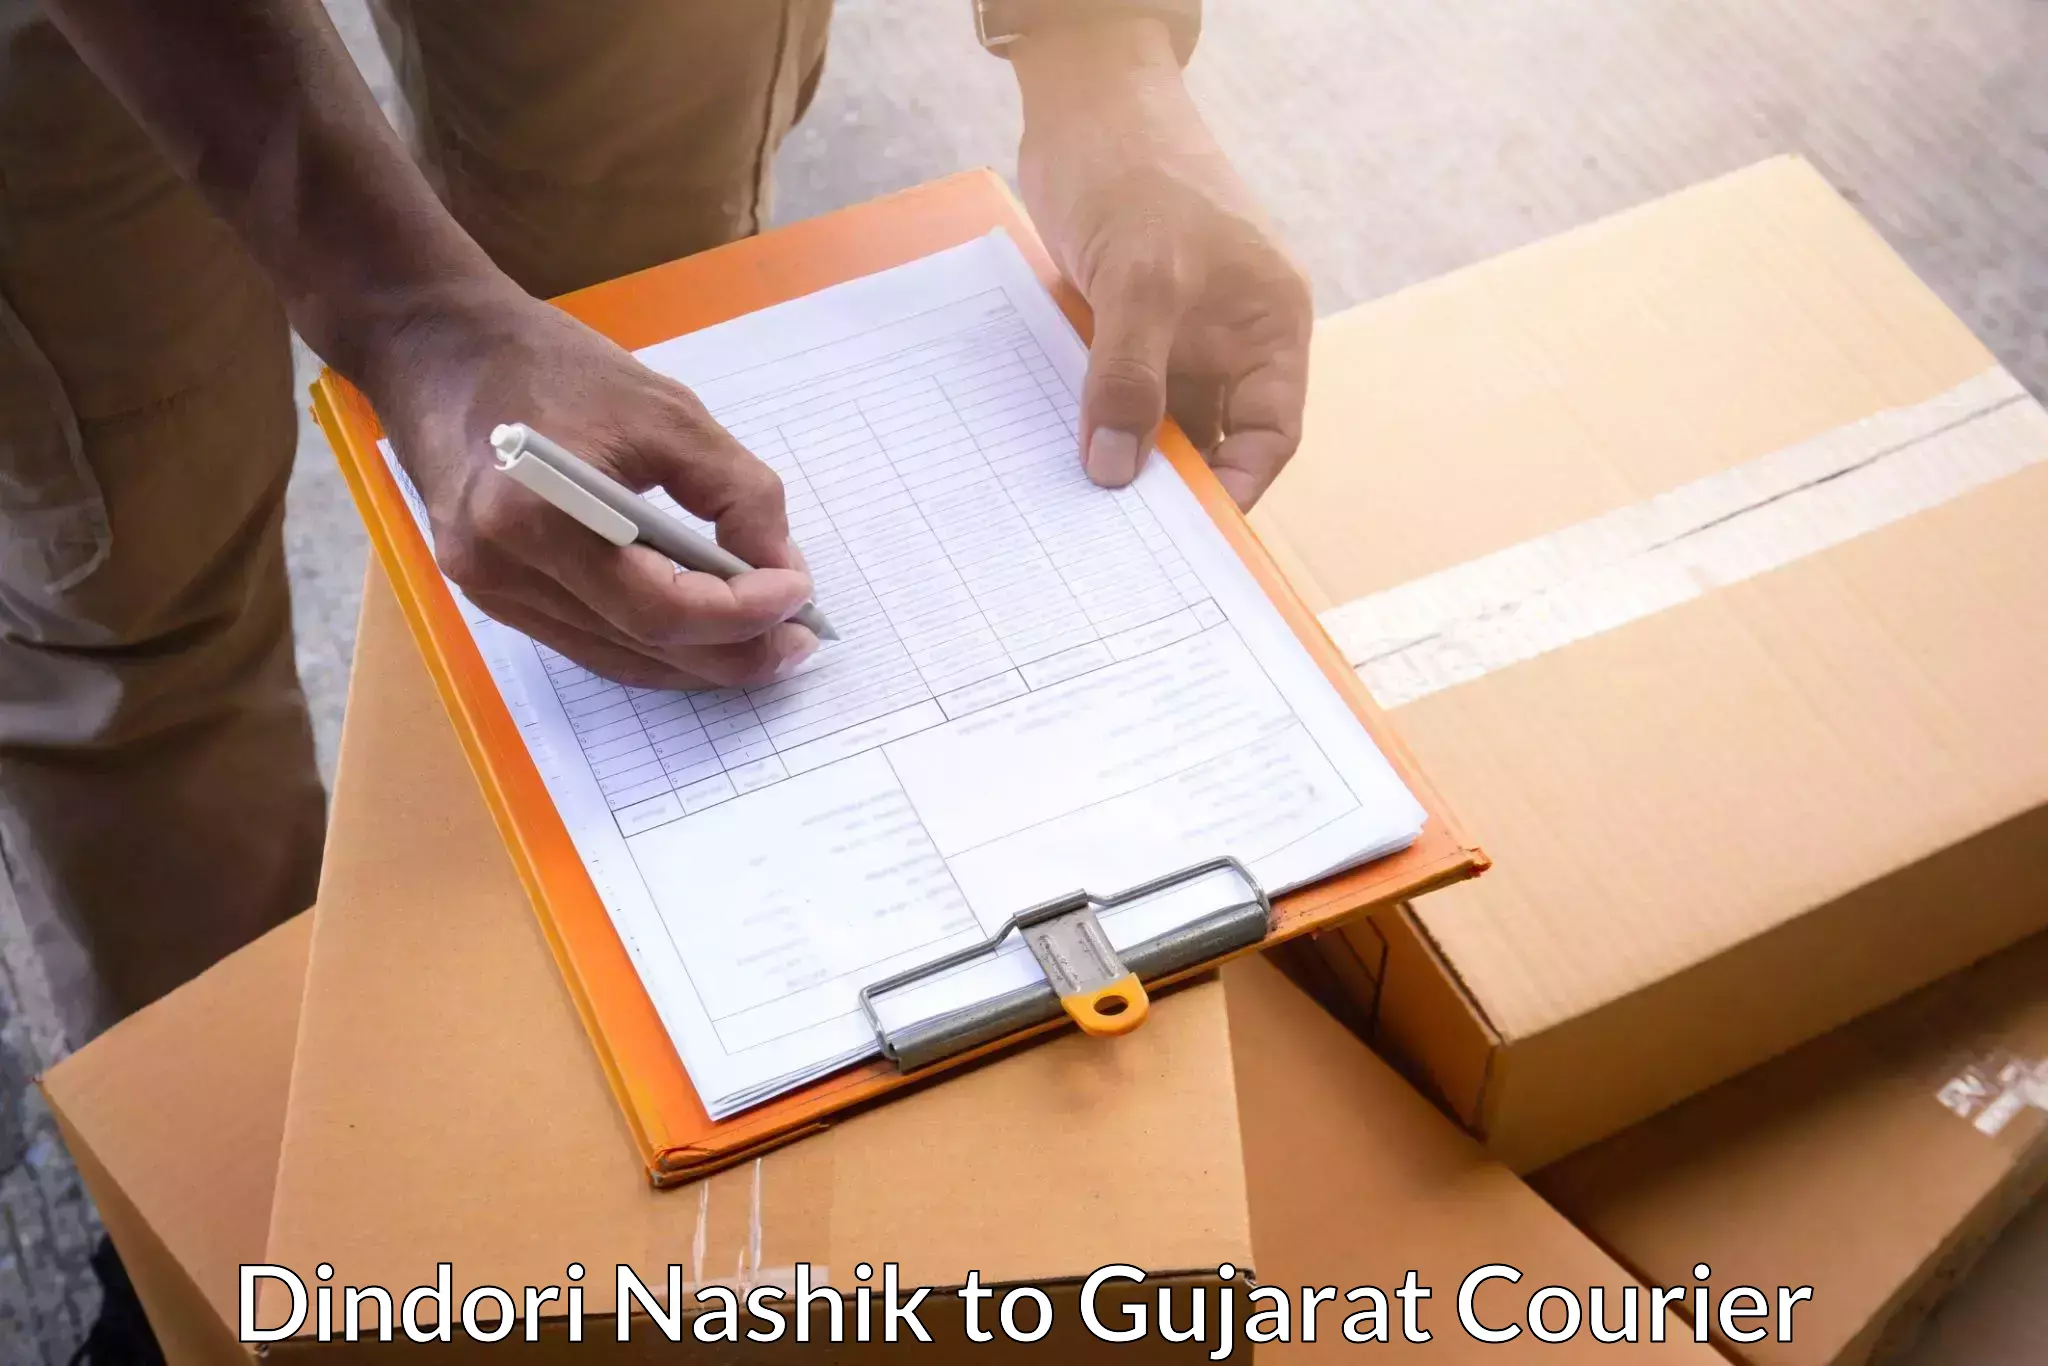 Express package transport Dindori Nashik to Gujarat